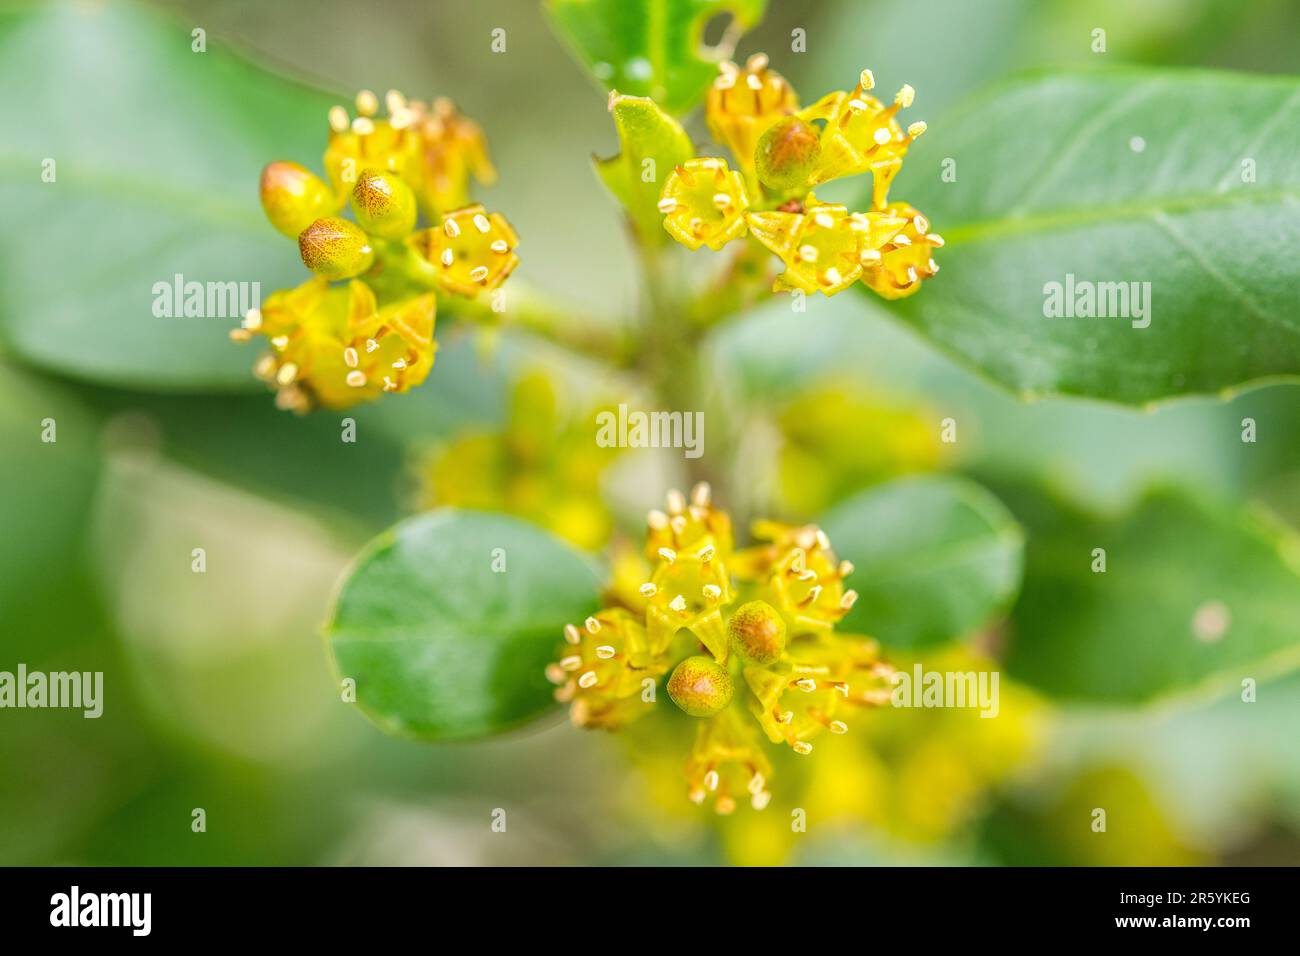 Il rhamnus alaternus è una specie di pianta fiorita appartenente alla famiglia delle rhamnaceae. Foto Stock